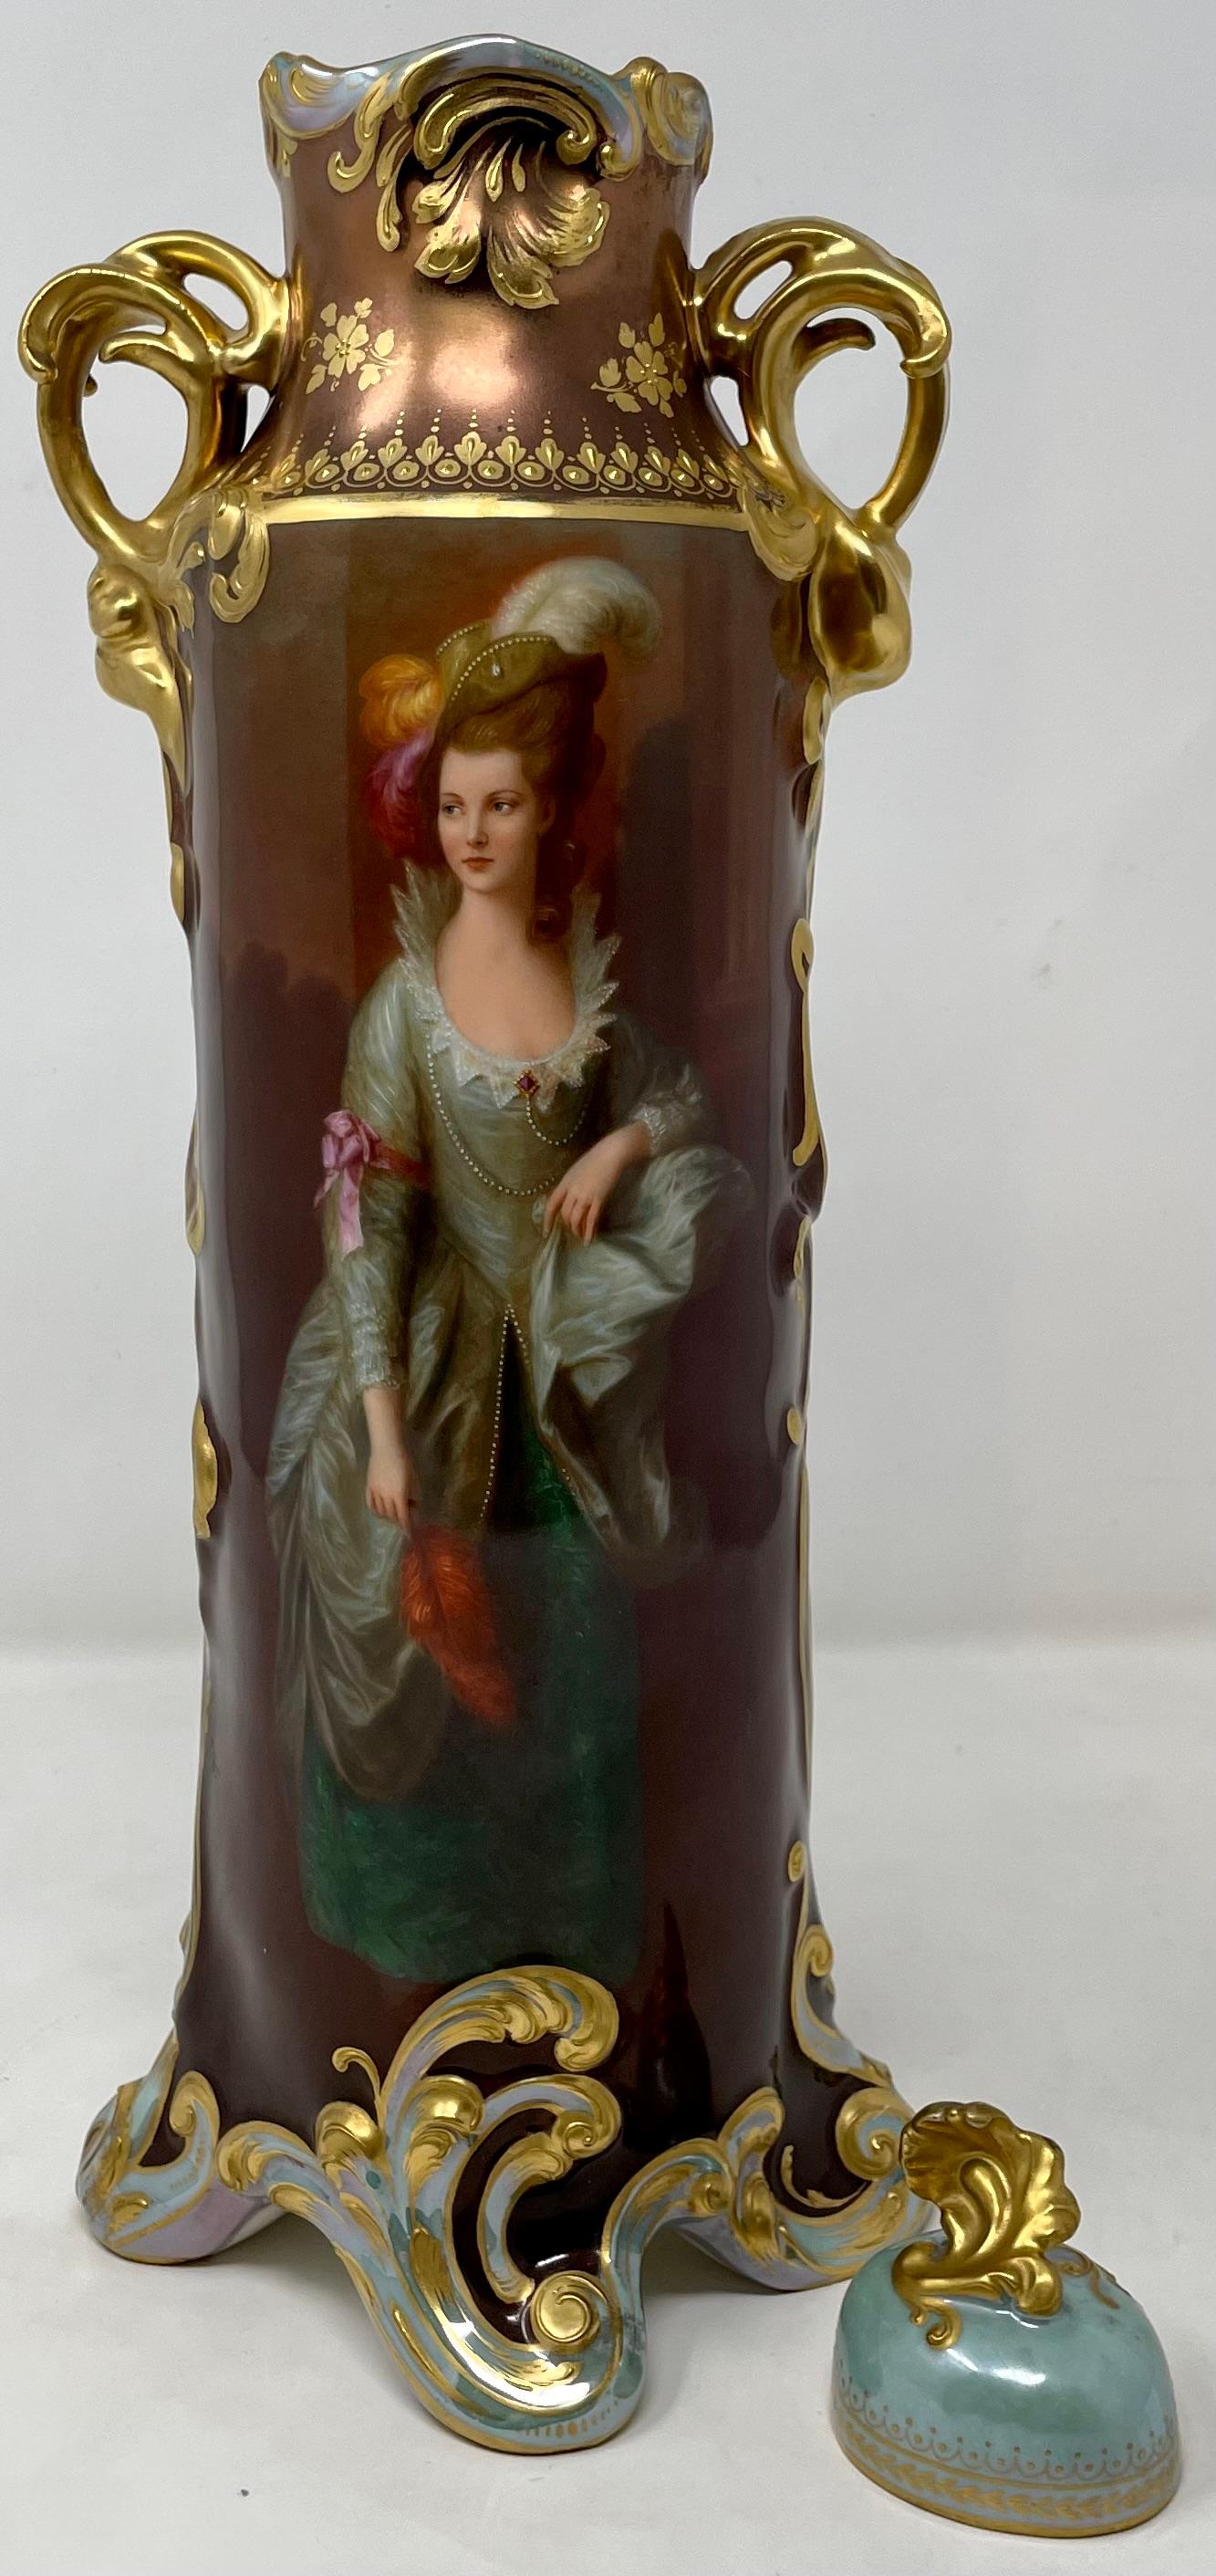 Antique Austrian Porcelain Urn & Cover with Portrait by Thomas Gainsborough For Sale 1